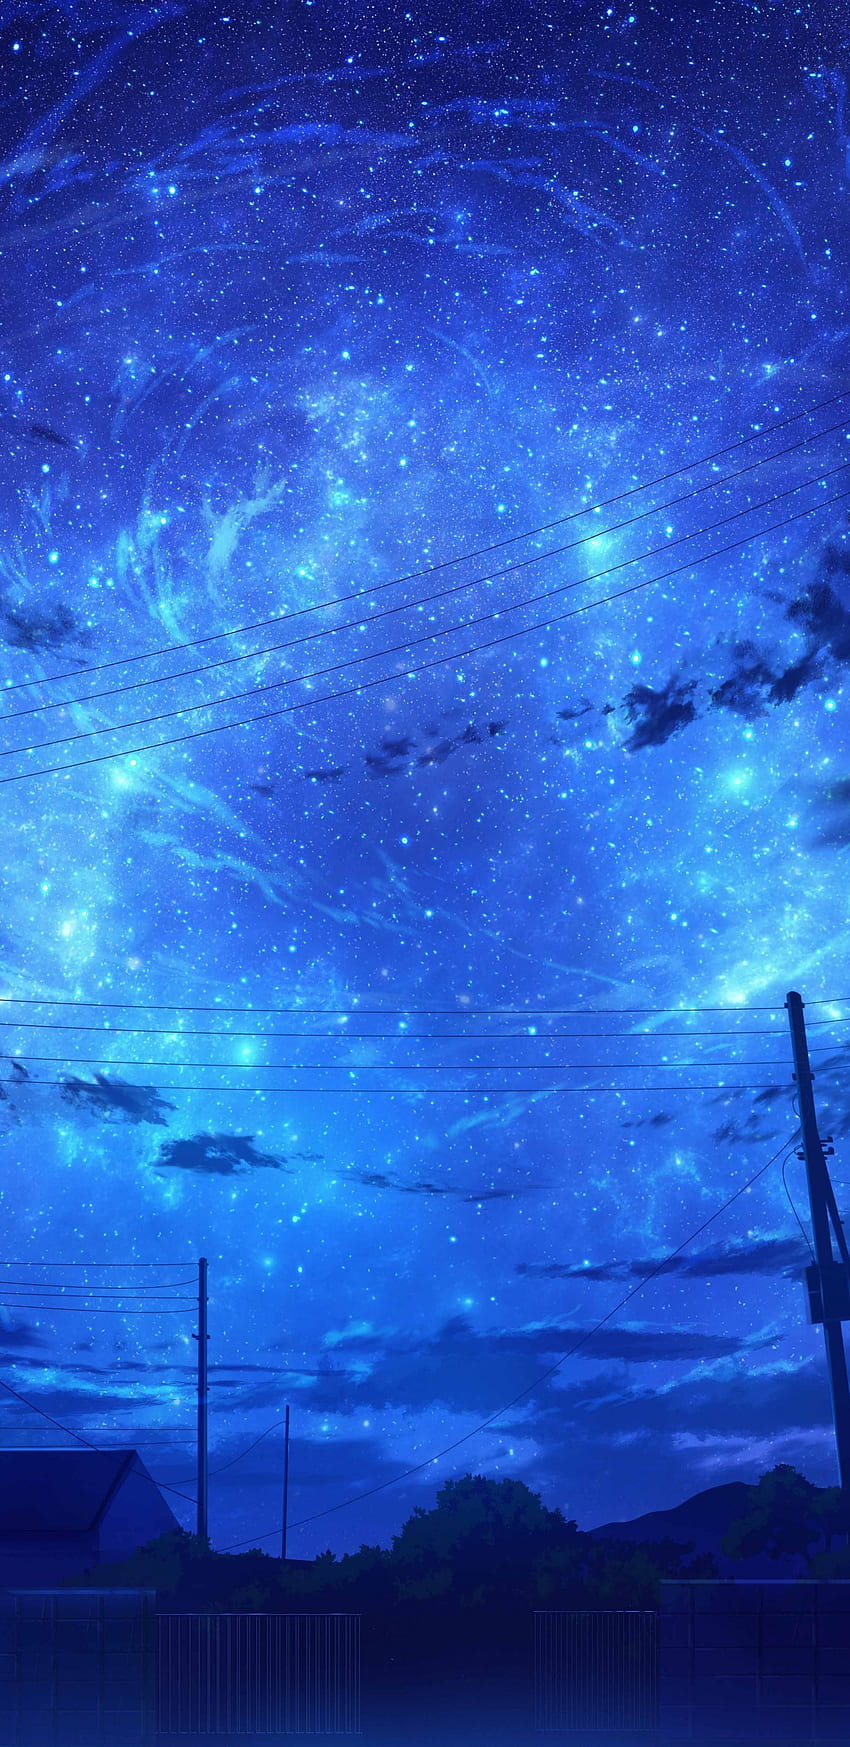 Anime Paisagem, Céu Azul, Nuvens, Cenário, Noite Estrelada para Samsung Galaxy S9, Note 9, S8, S8+, Google Pixel 3 XL - Maiden Papel de parede de celular HD